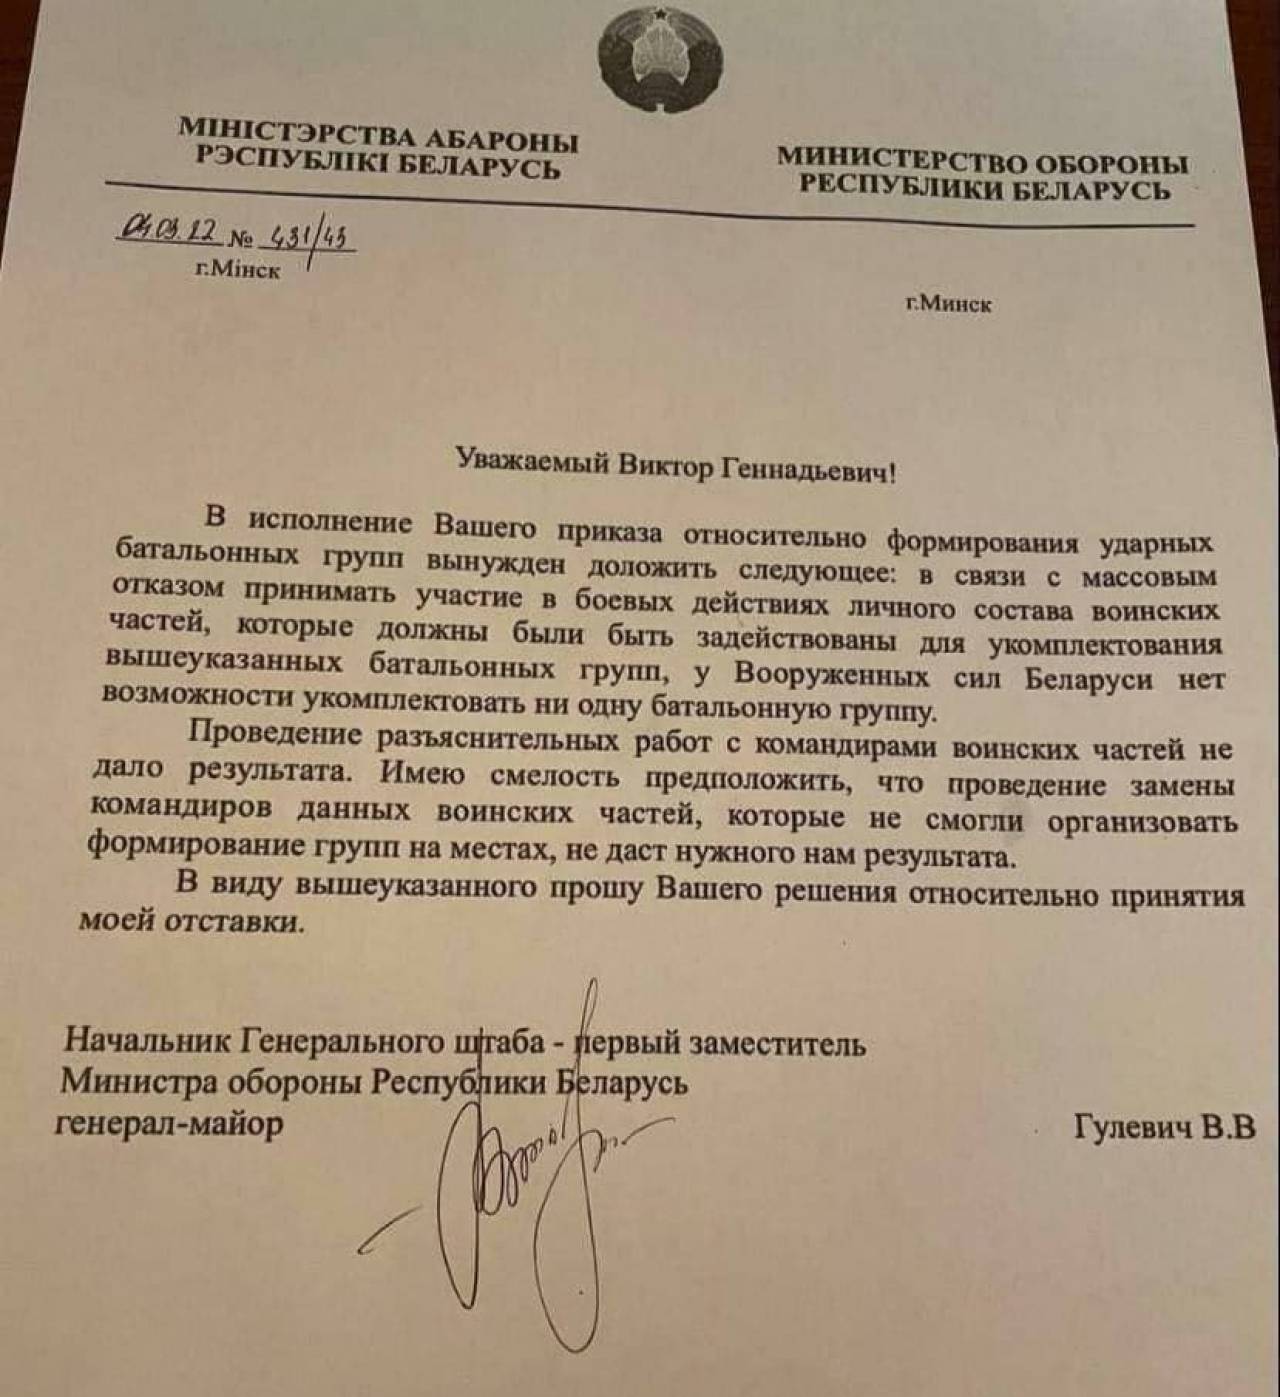 В соцсетях появился документ об отставке якобы от имени главы Генштаба Беларуси: В Минобороны это назвали самым глупым фейком сезона